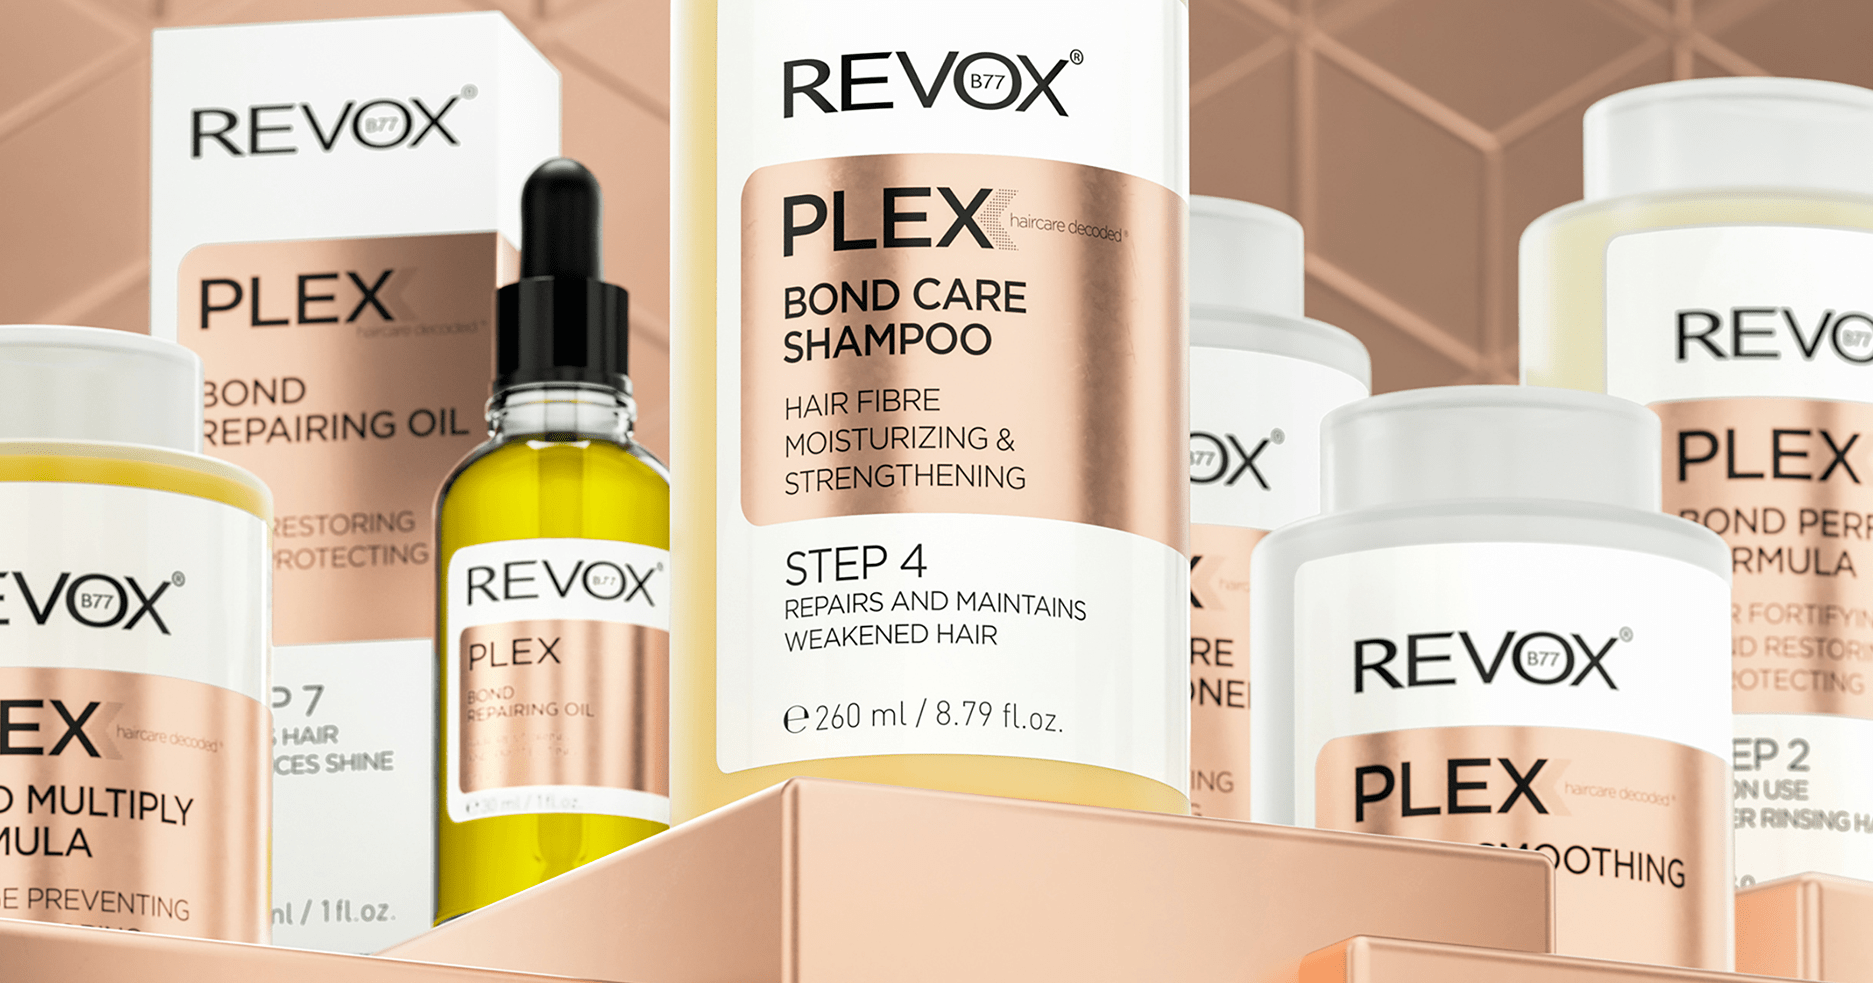 Kľúč k efektívnej starostlivosti o vlasy rozšifrovaný značkou REVOX PLEX!